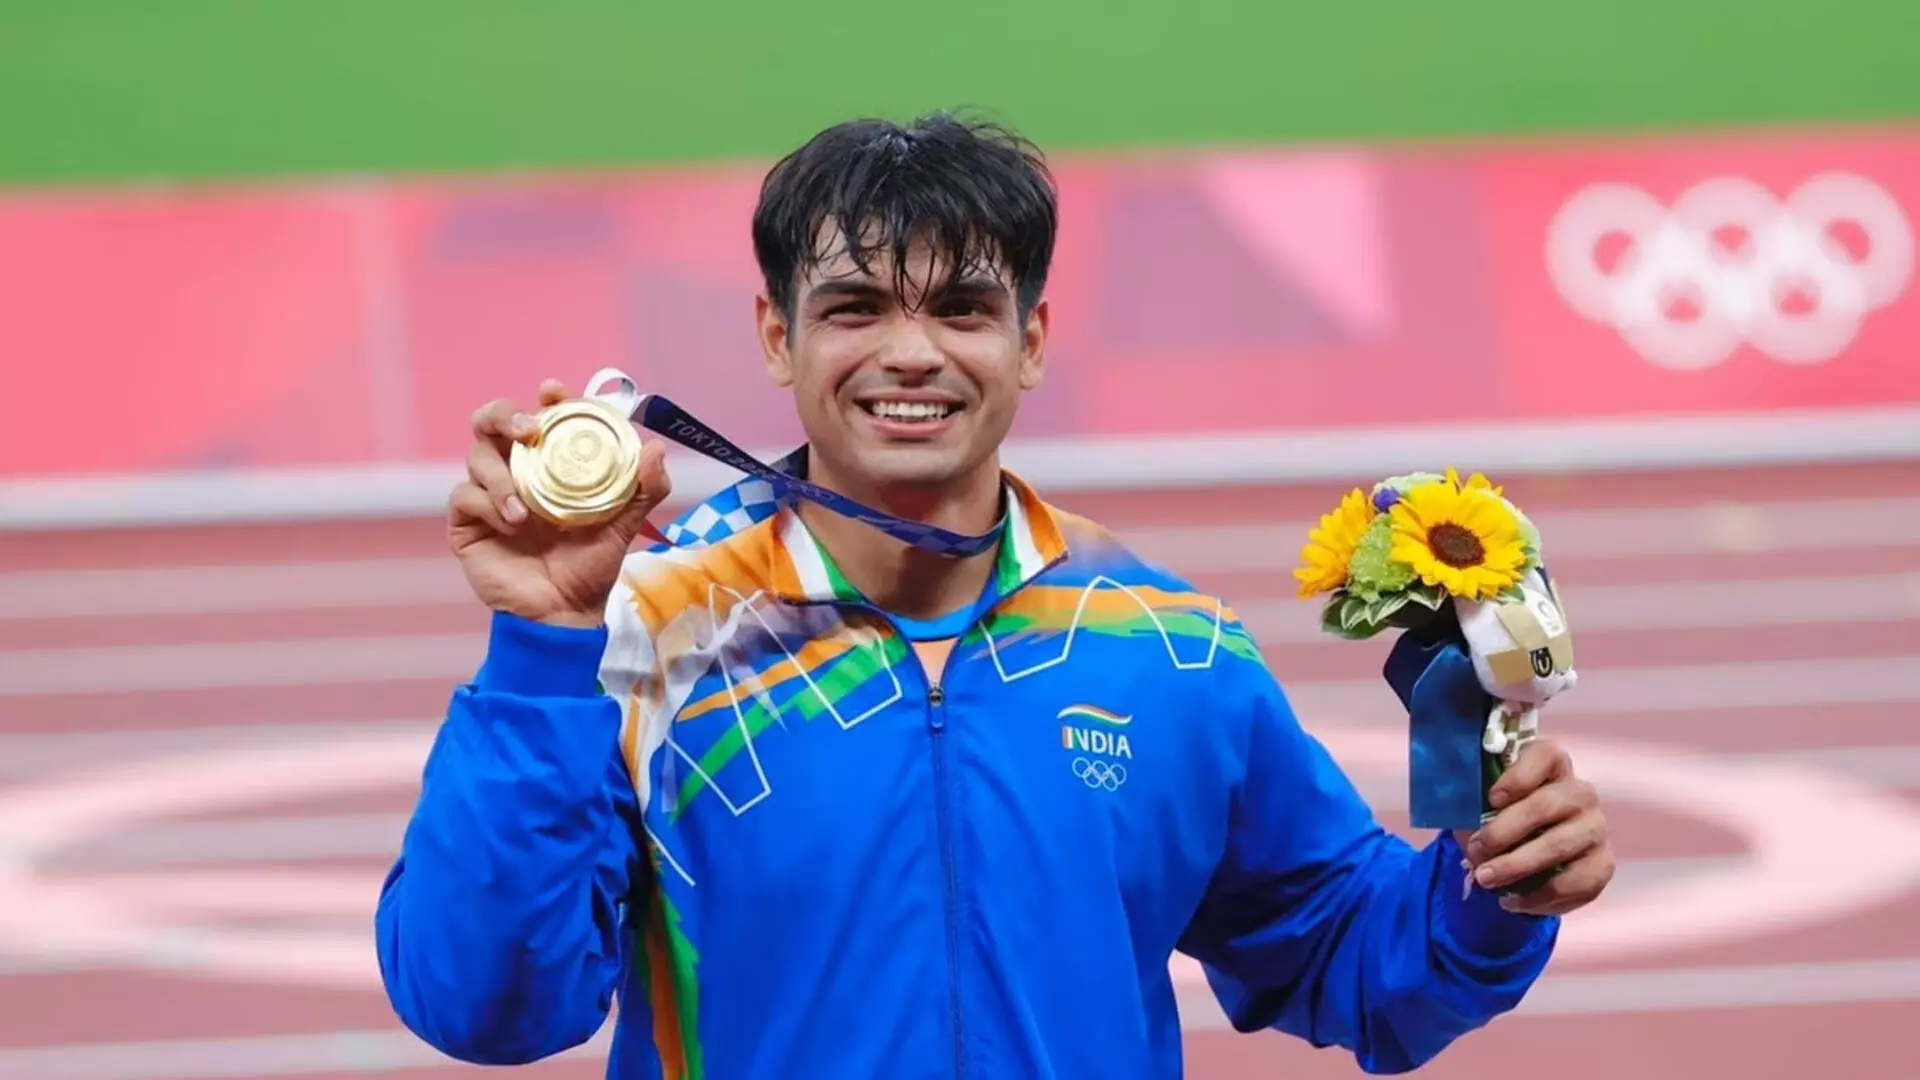 Olympics preview: नीरज चोपड़ा फिर से सबसे बड़ी उम्मीद, भारतीय दल प्रदर्शन के लिए तैयार